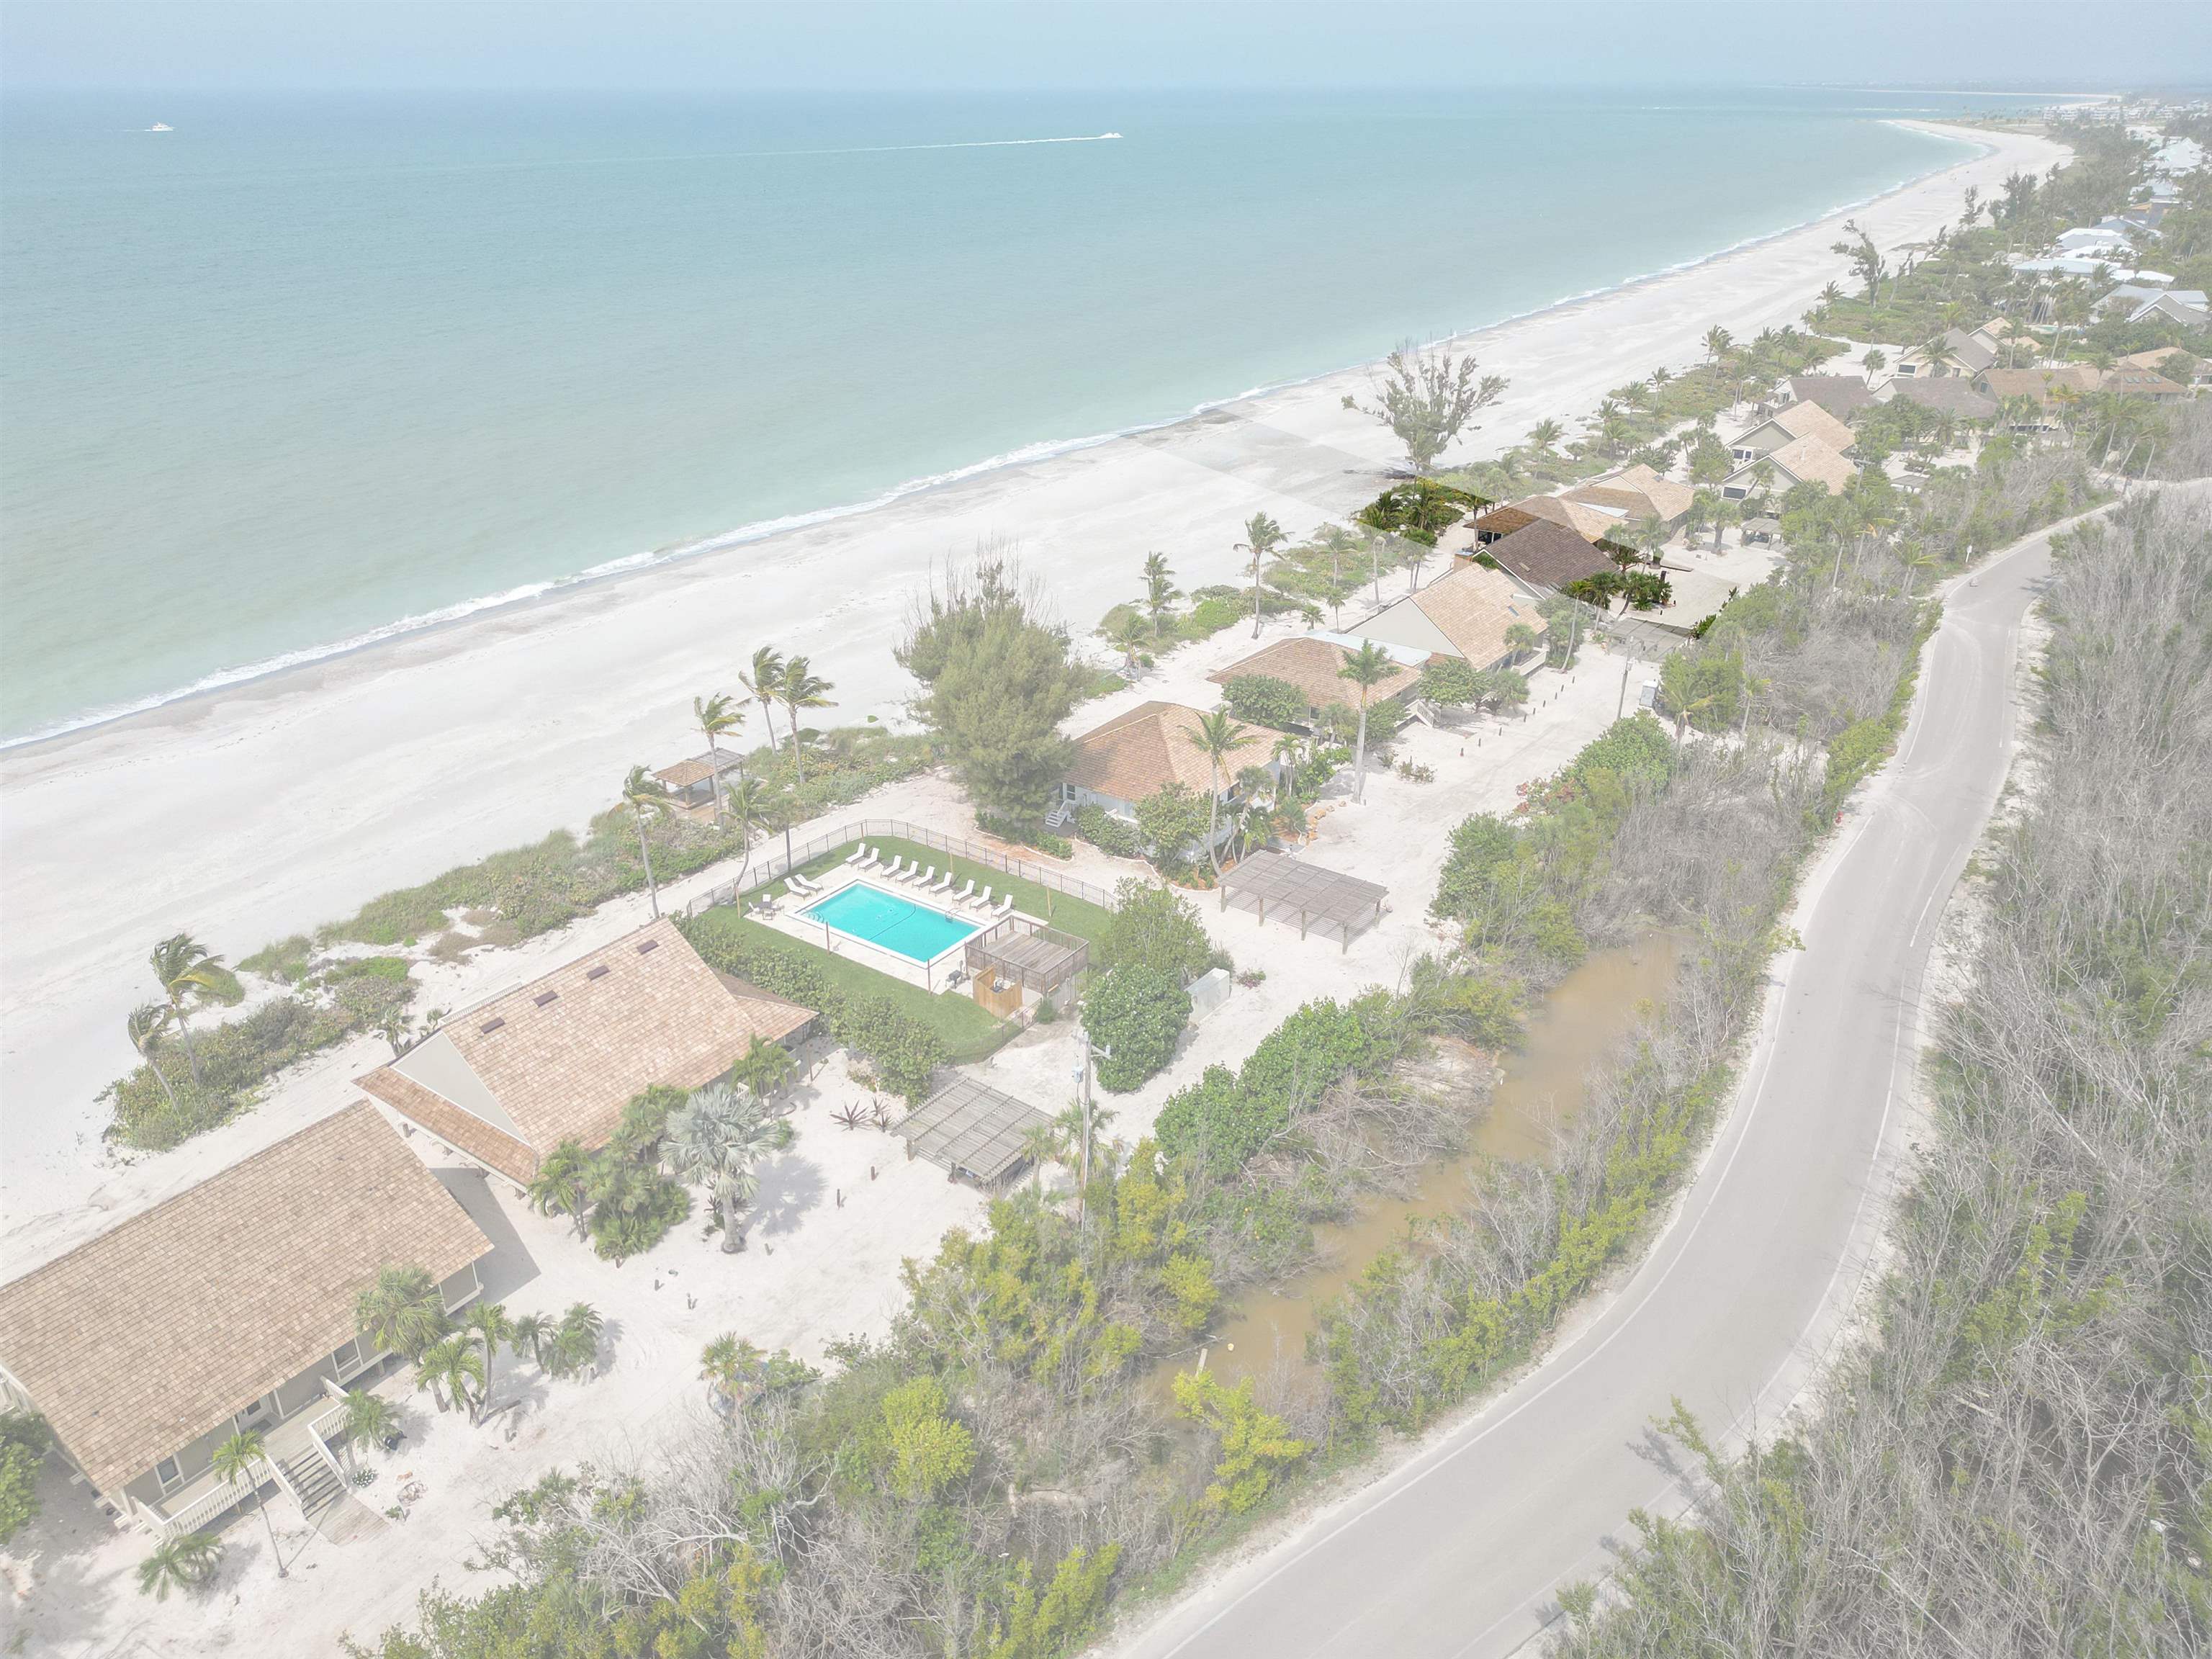 13 Beach Homes, Captiva, Florida 33924, 4 Bedrooms Bedrooms, ,4 BathroomsBathrooms,Condo,For Sale,Beach Homes,2240312